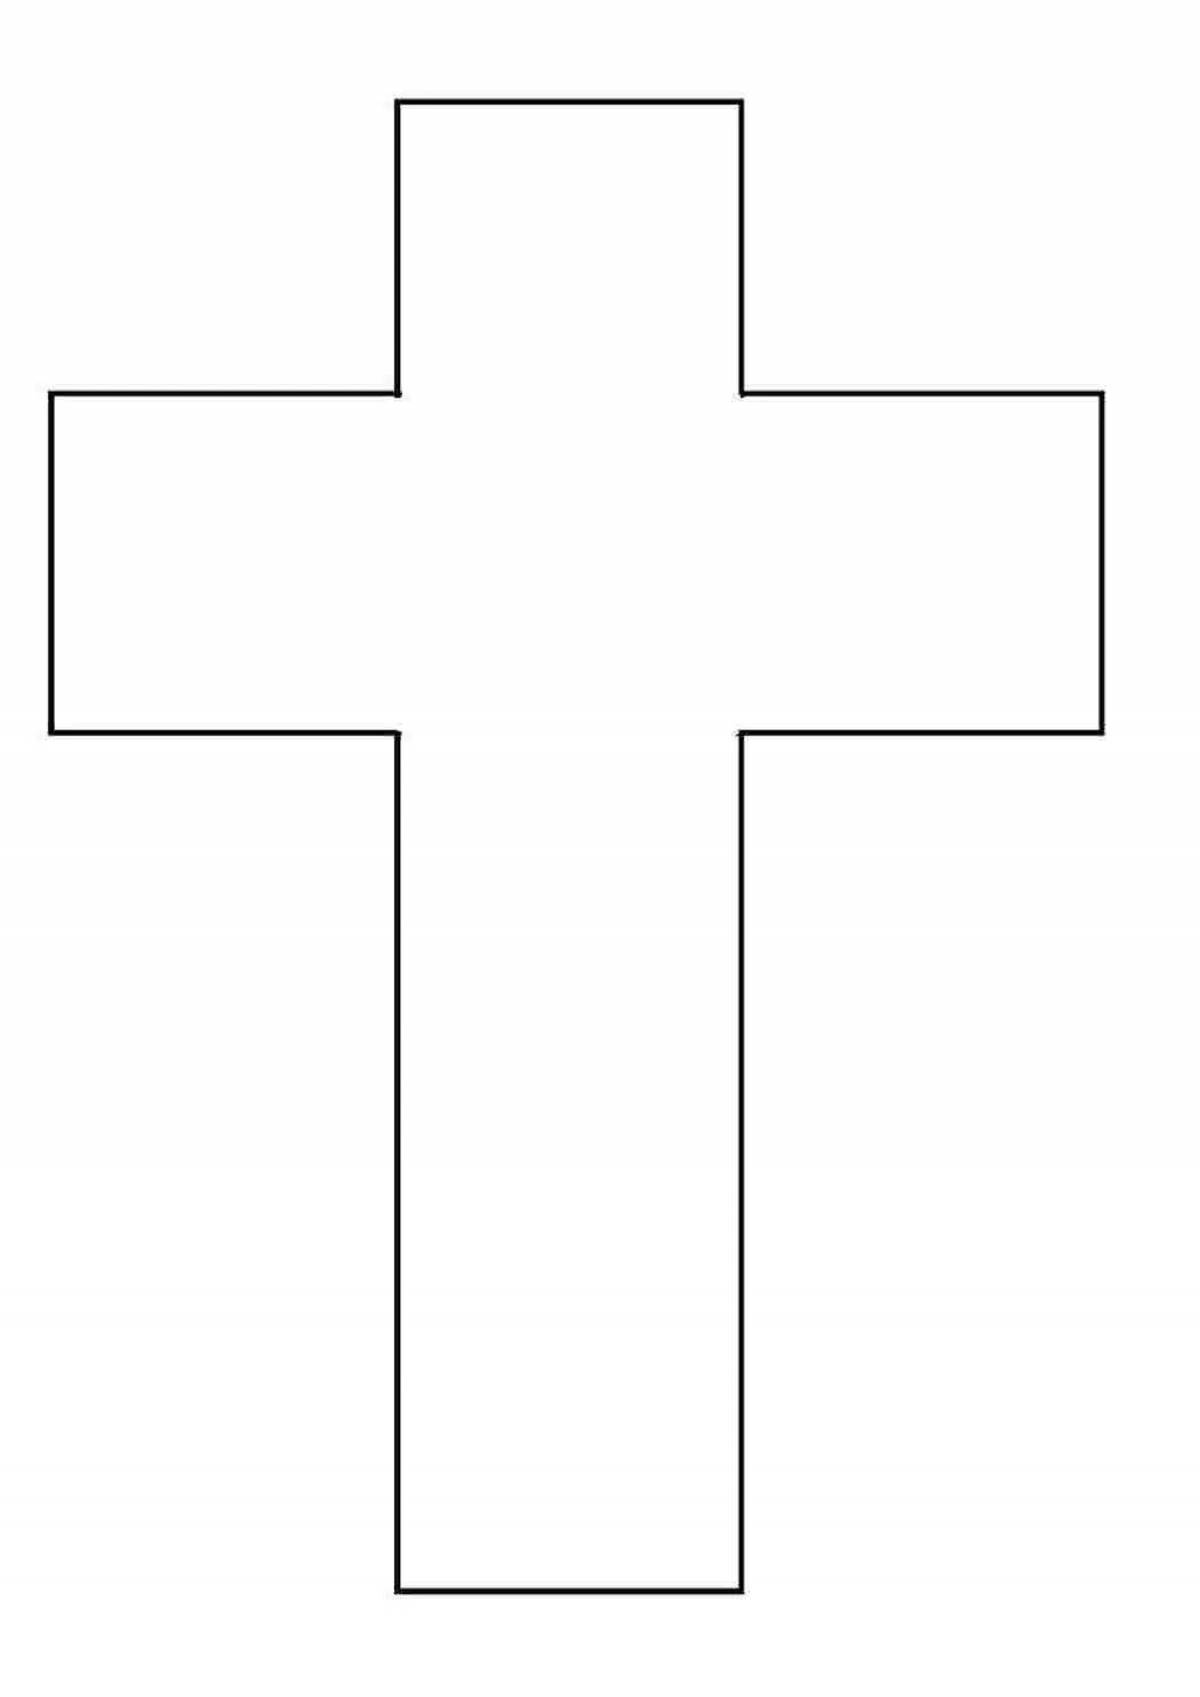 Рисование крестов над проемами накануне крещения — суеверие?